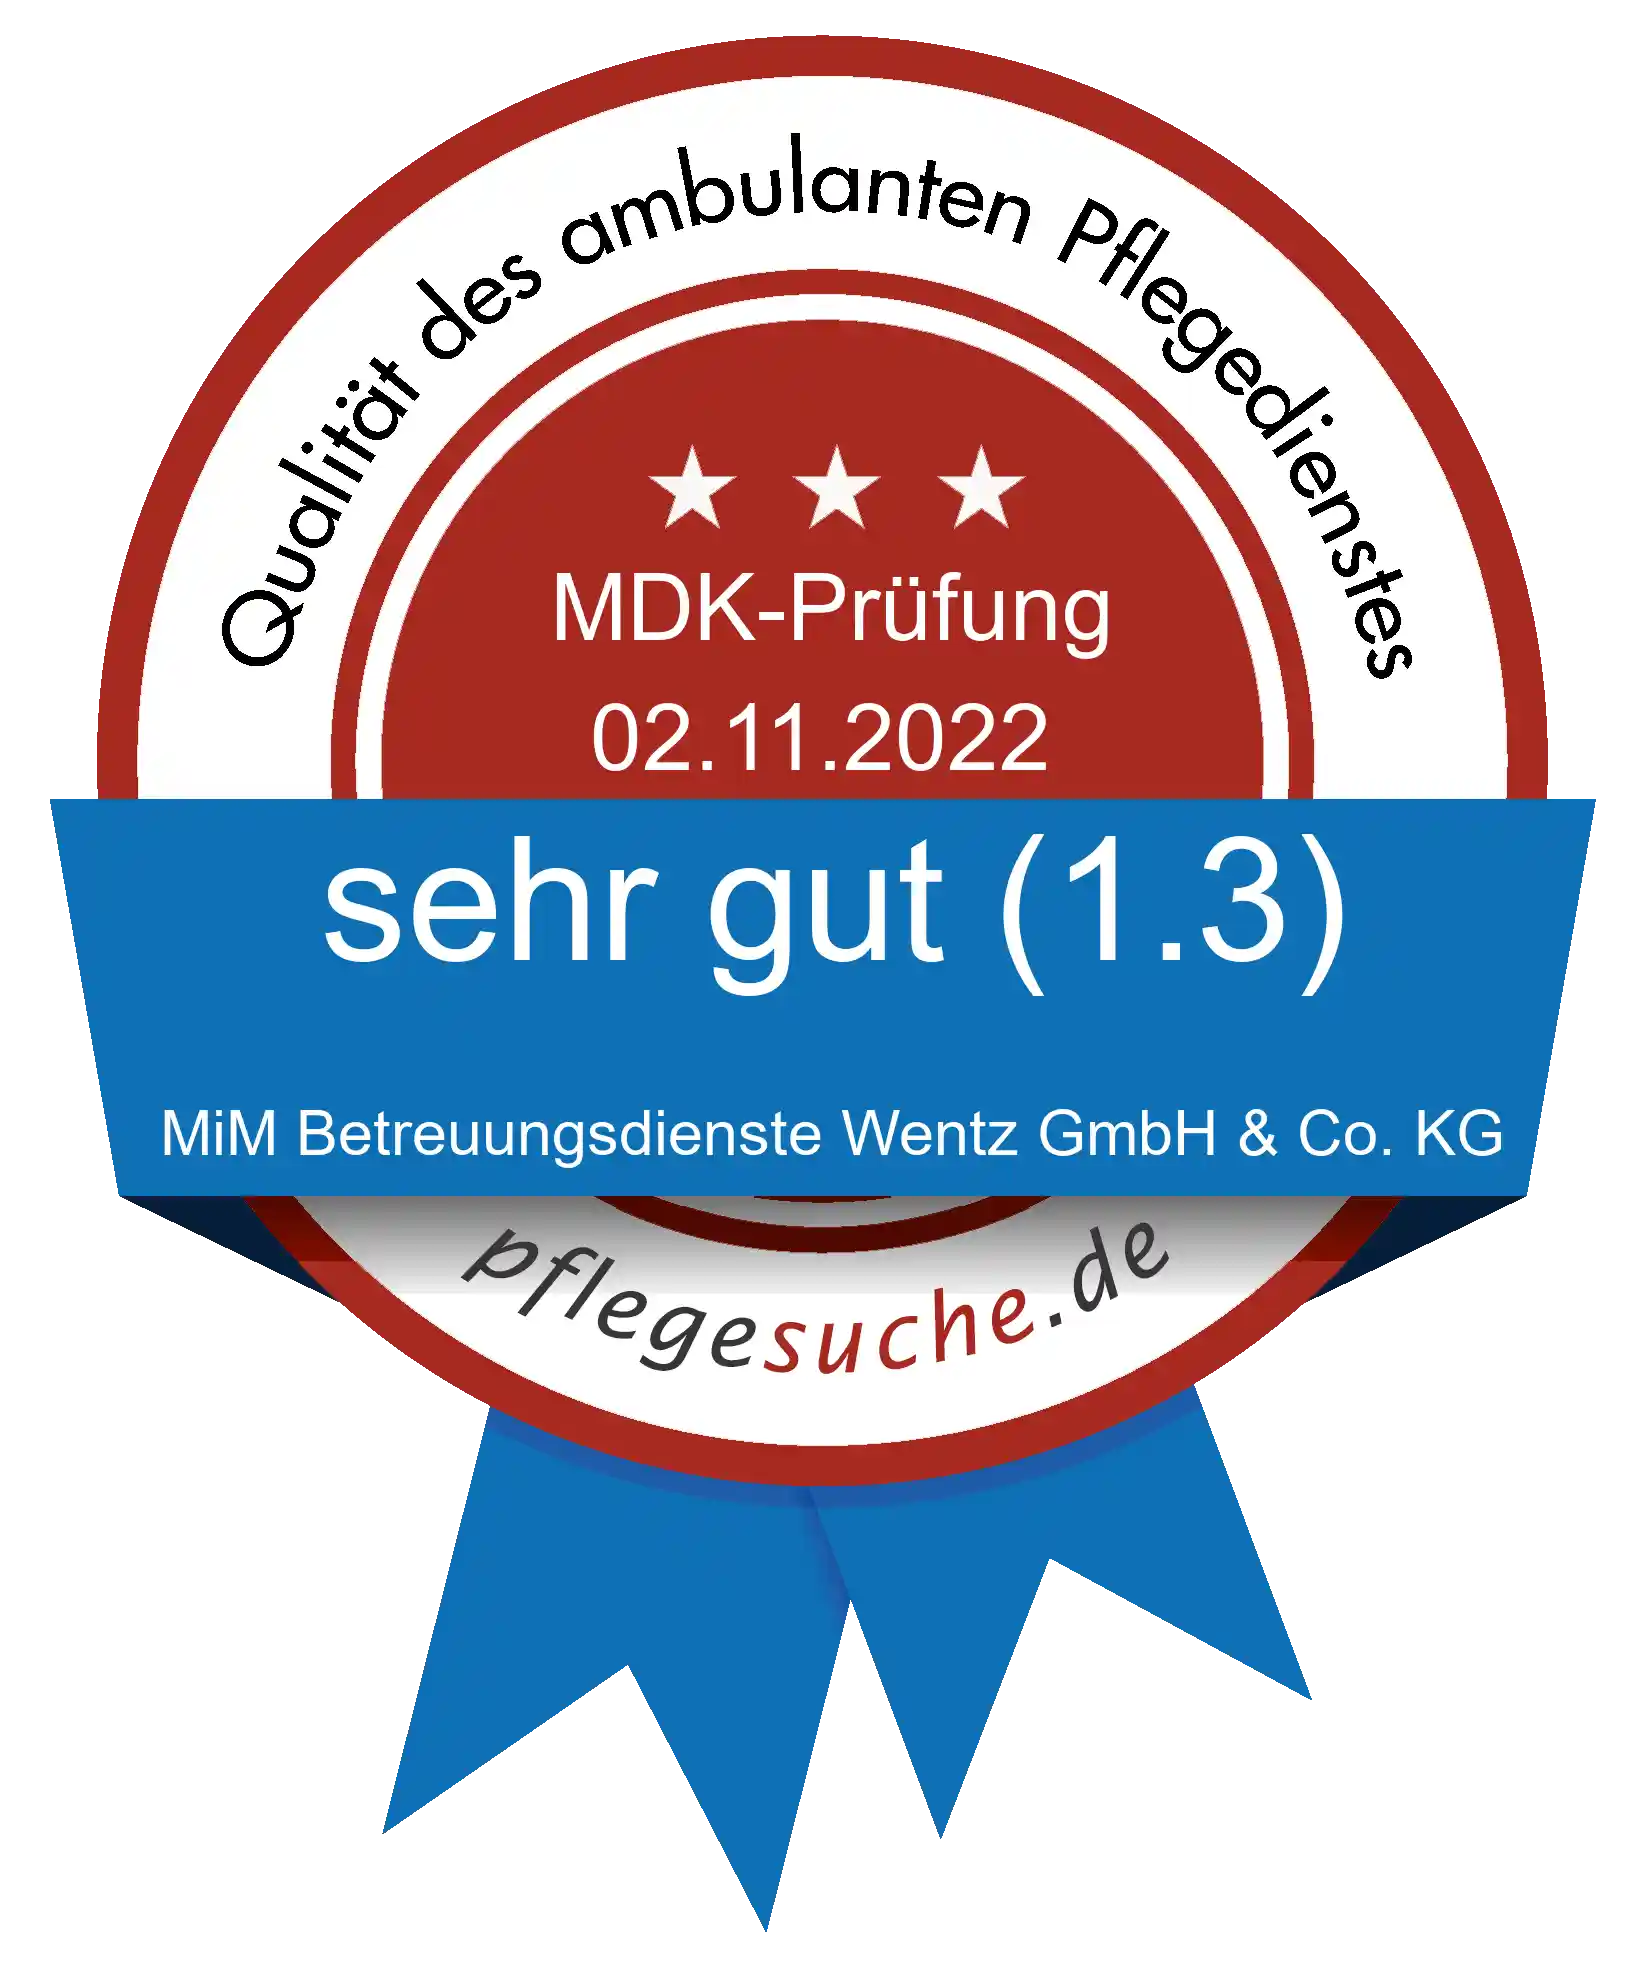 Siegel Benotung MiM Betreuungsdienste Wentz GmbH & Co. KG